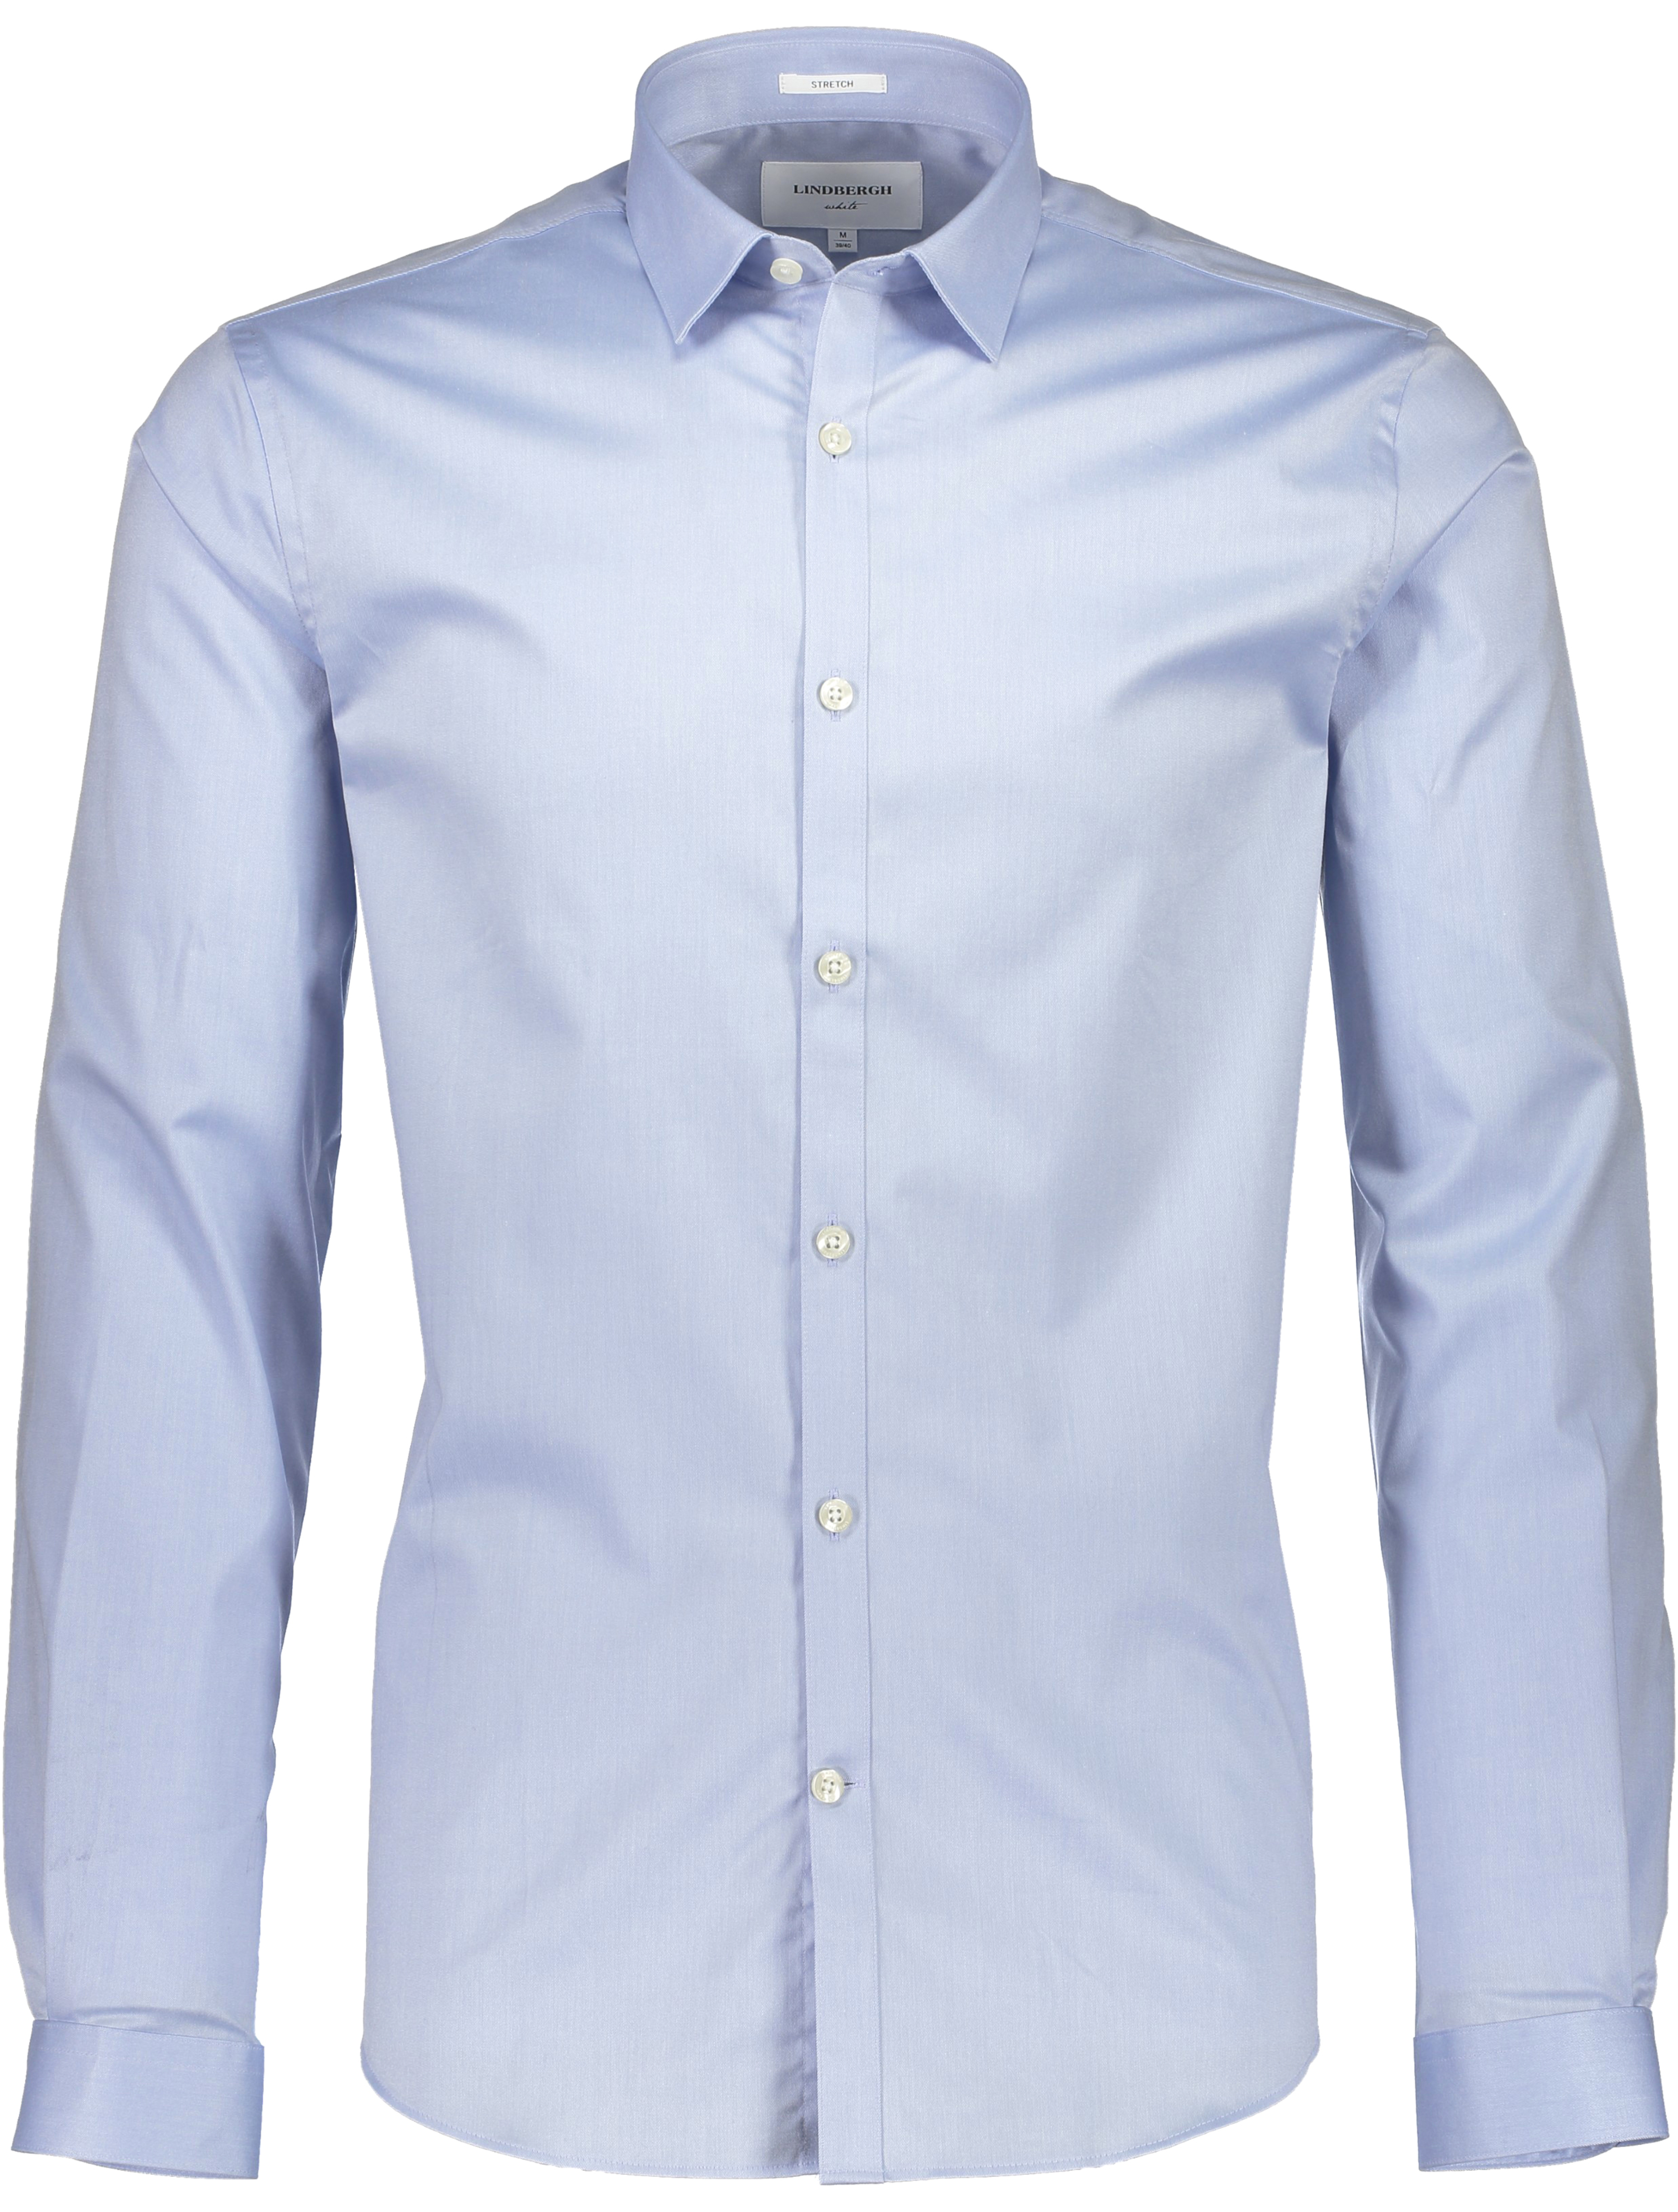 Lindbergh Business shirt blue / light blue